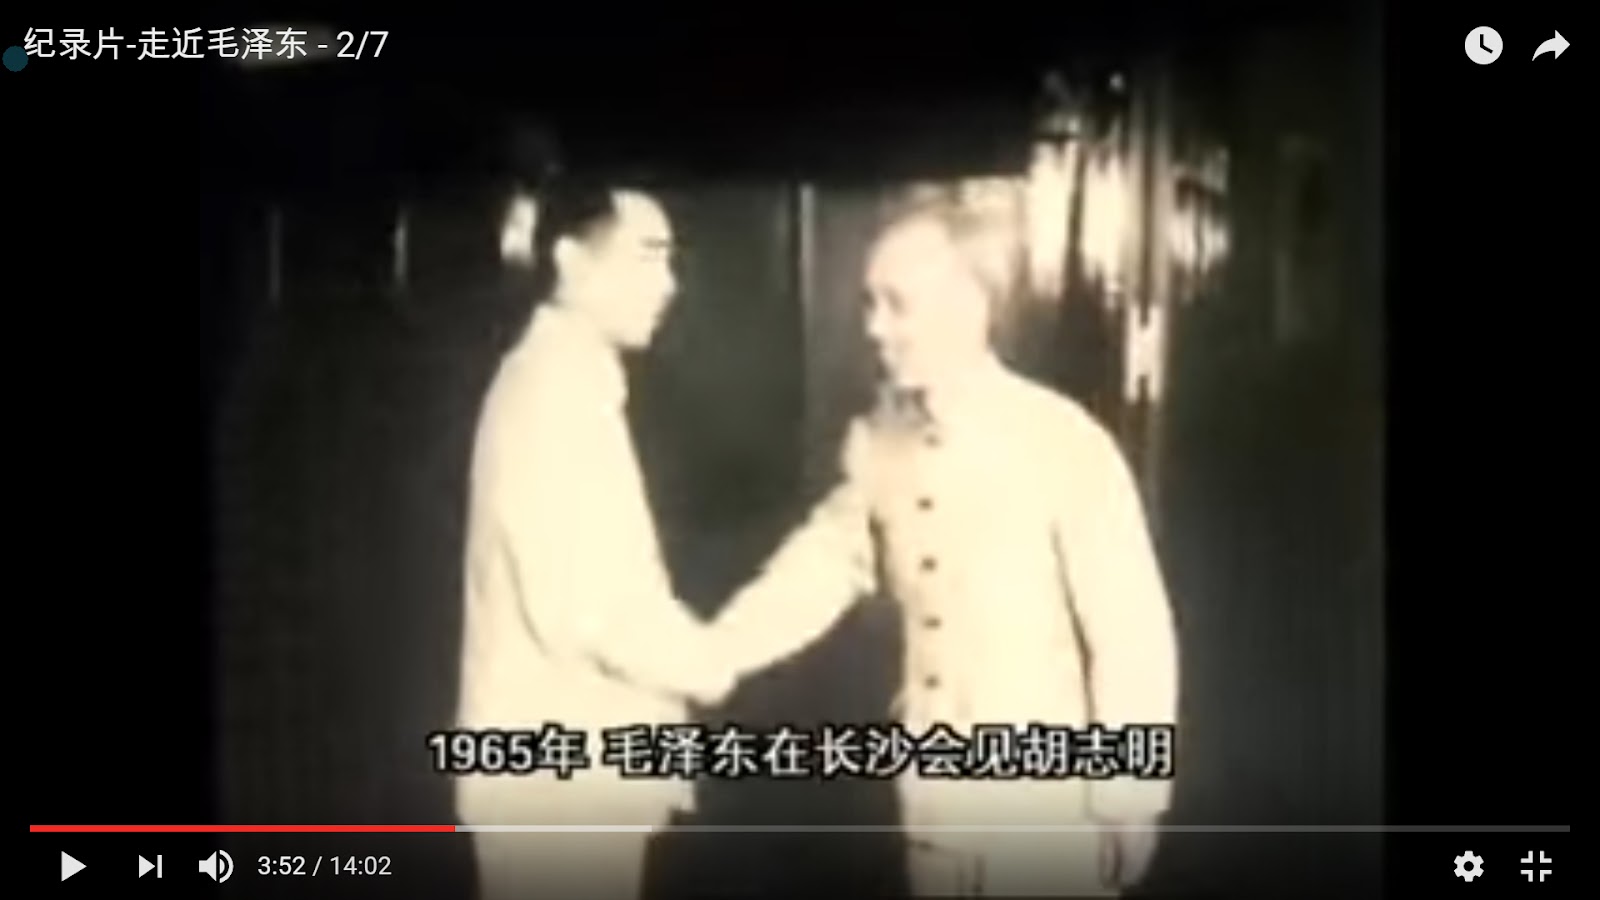 Hồ Chí Minh gặp Mao Trạch Đông tại Tràng Sa năm 1965 - tẩu 走 cận 近 mao 毛 trạch 泽 đông 东.jpg